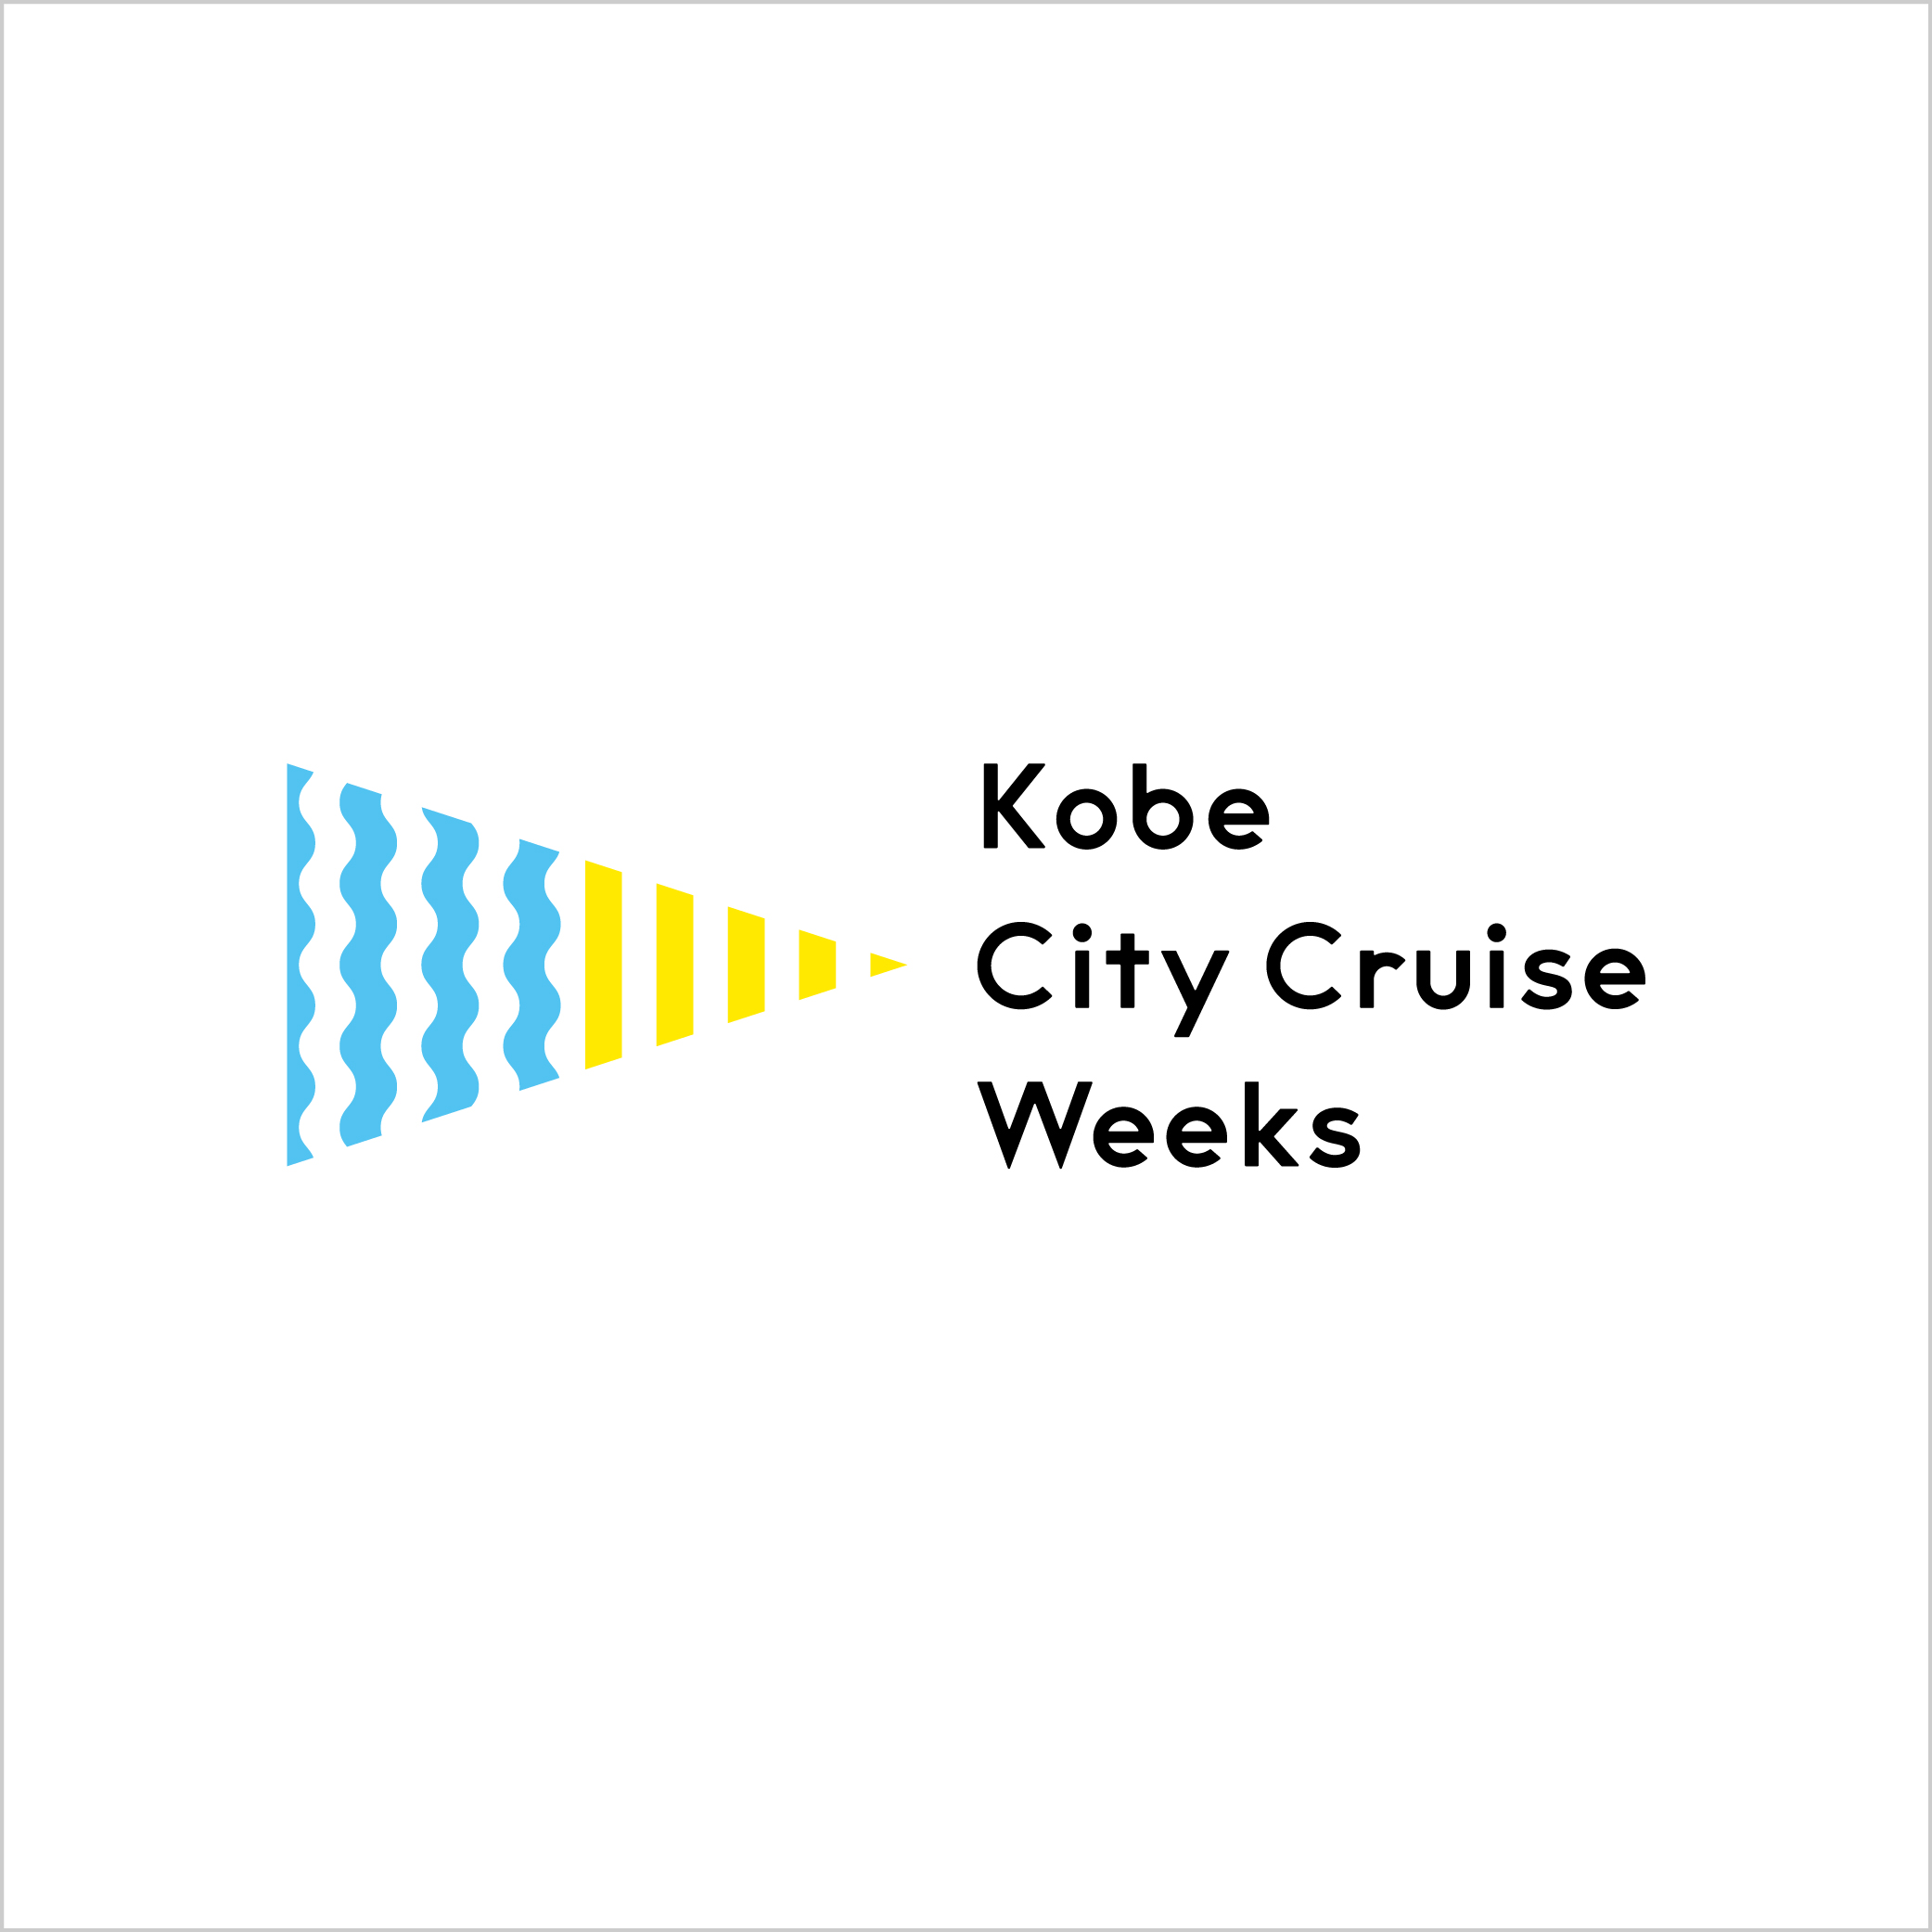 Kobe City Cruise Weeks